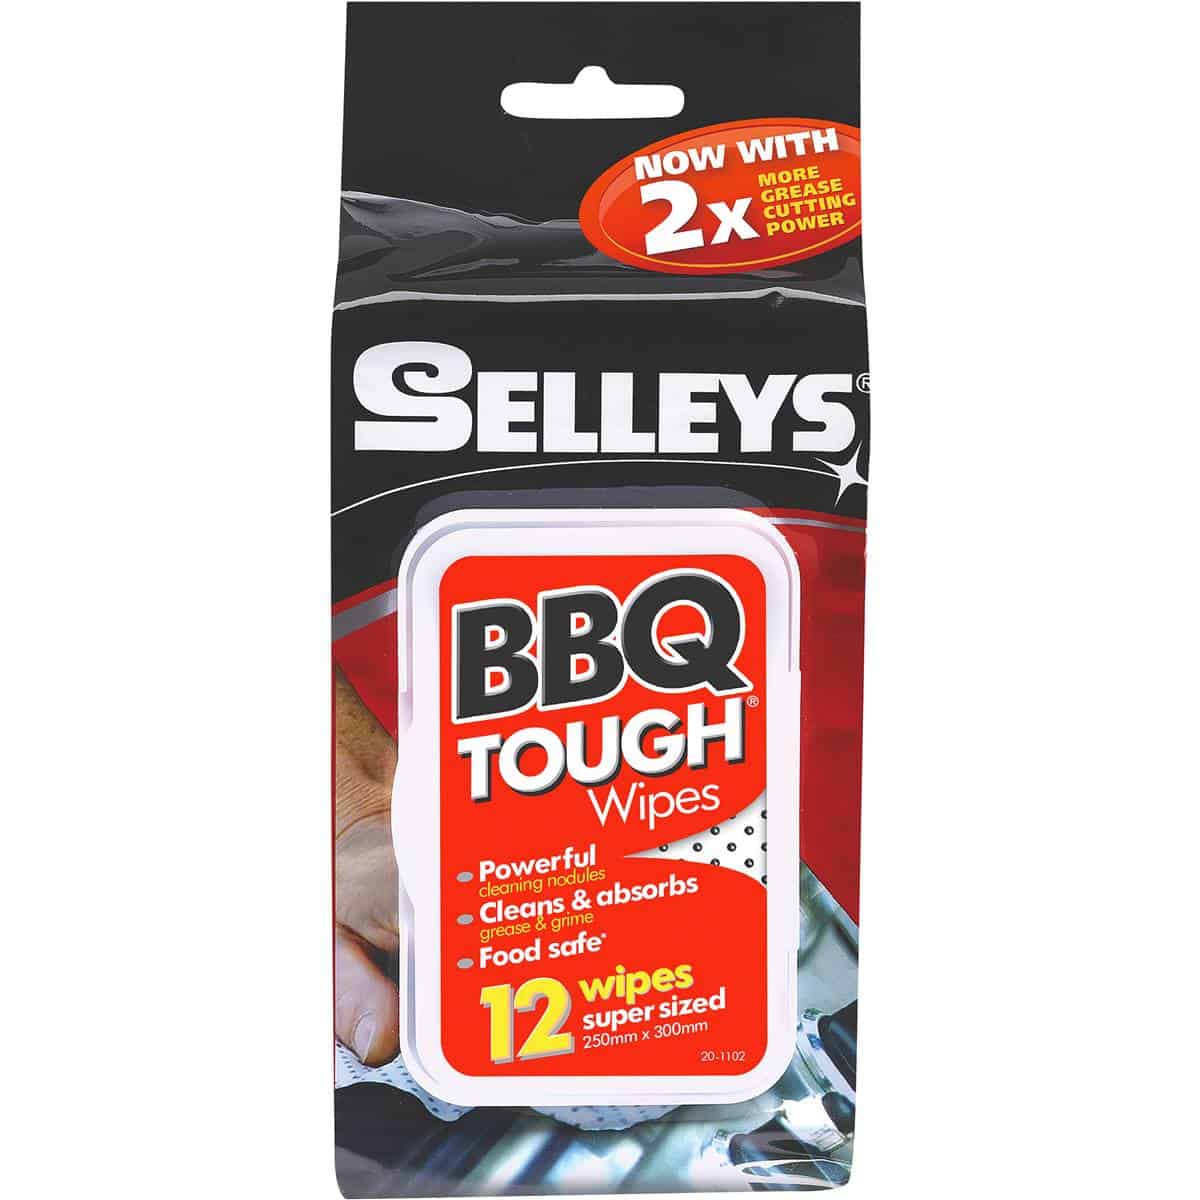 Selleys Bbq Tough Wipes 12pk